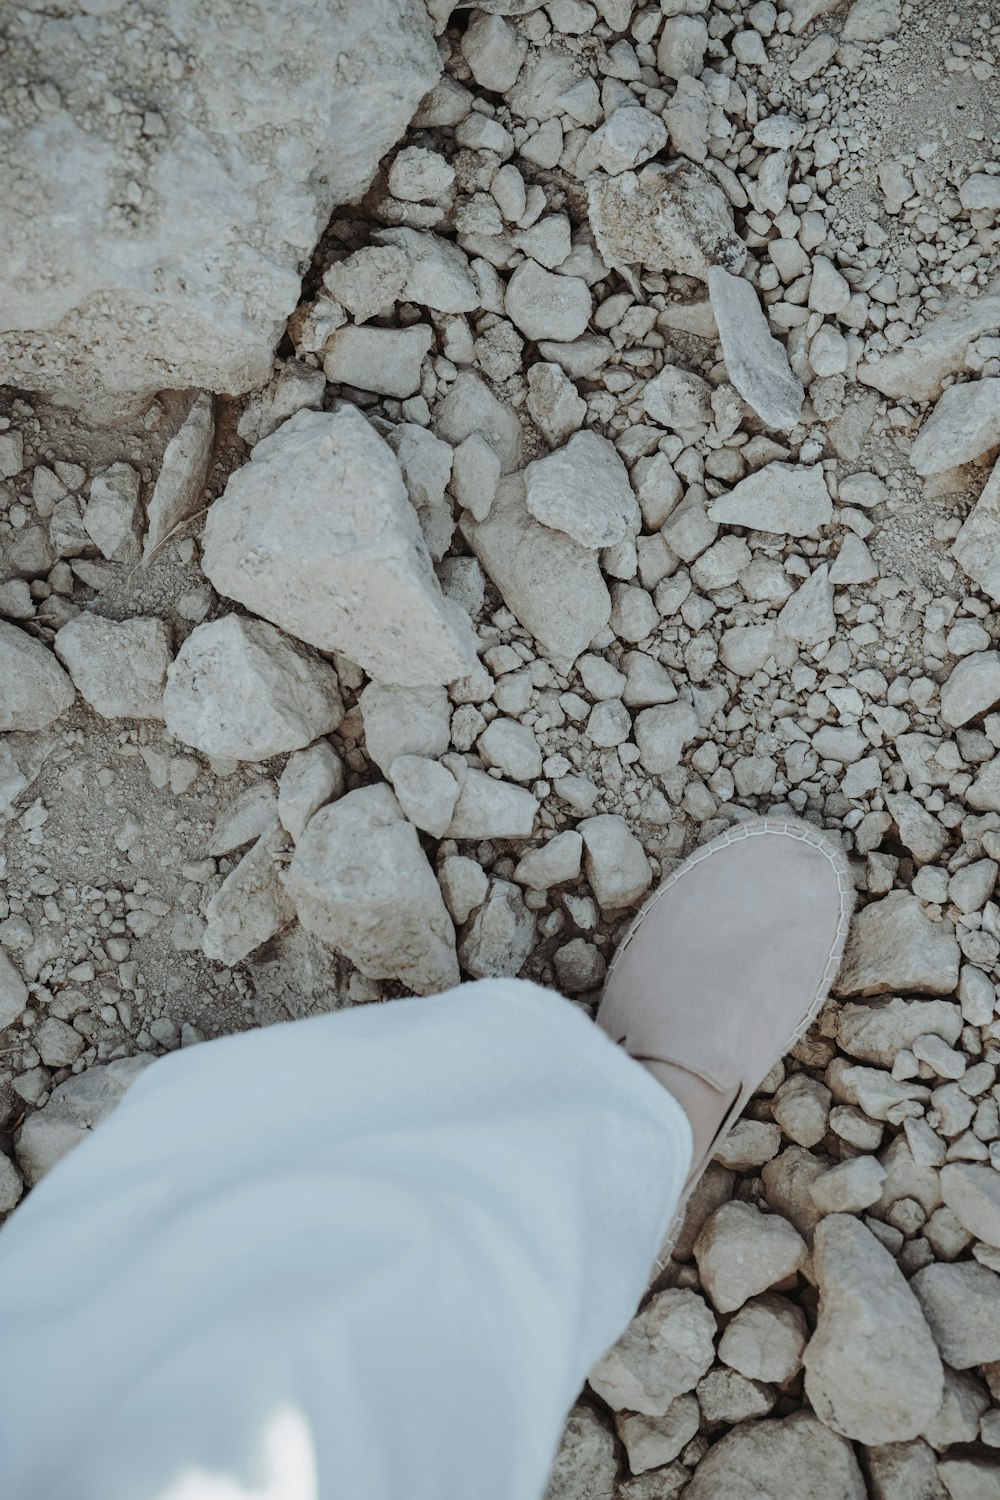 a shoe on a rocky surface